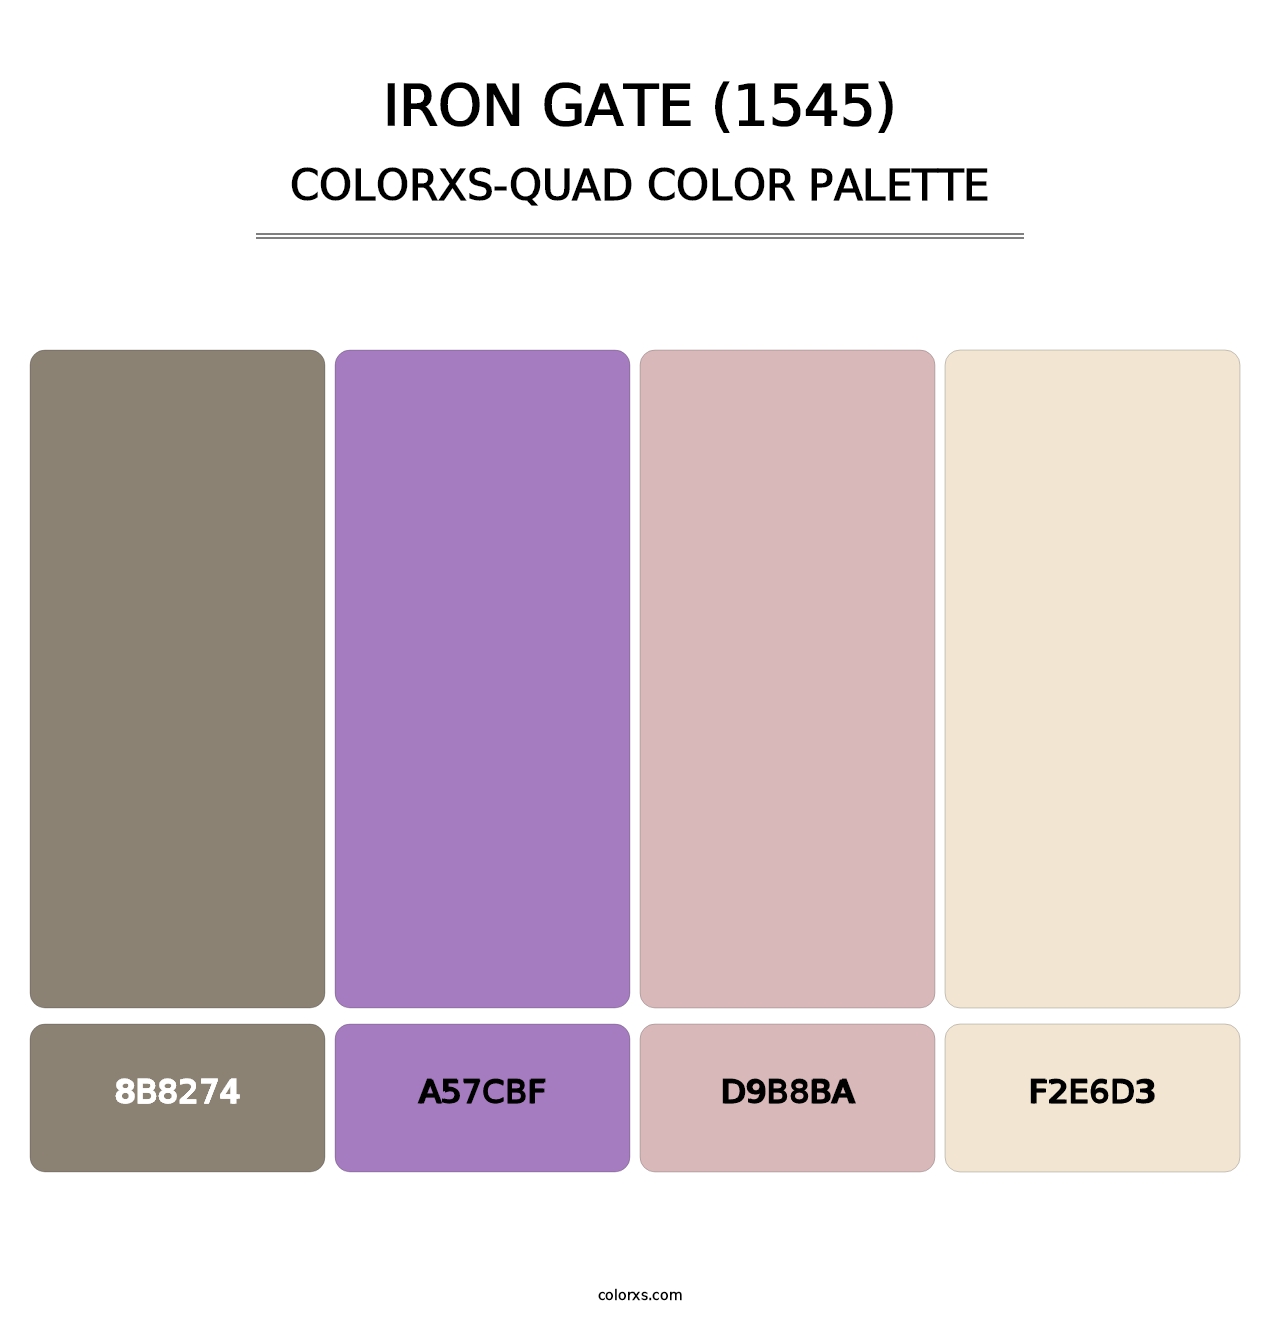 Iron Gate (1545) - Colorxs Quad Palette